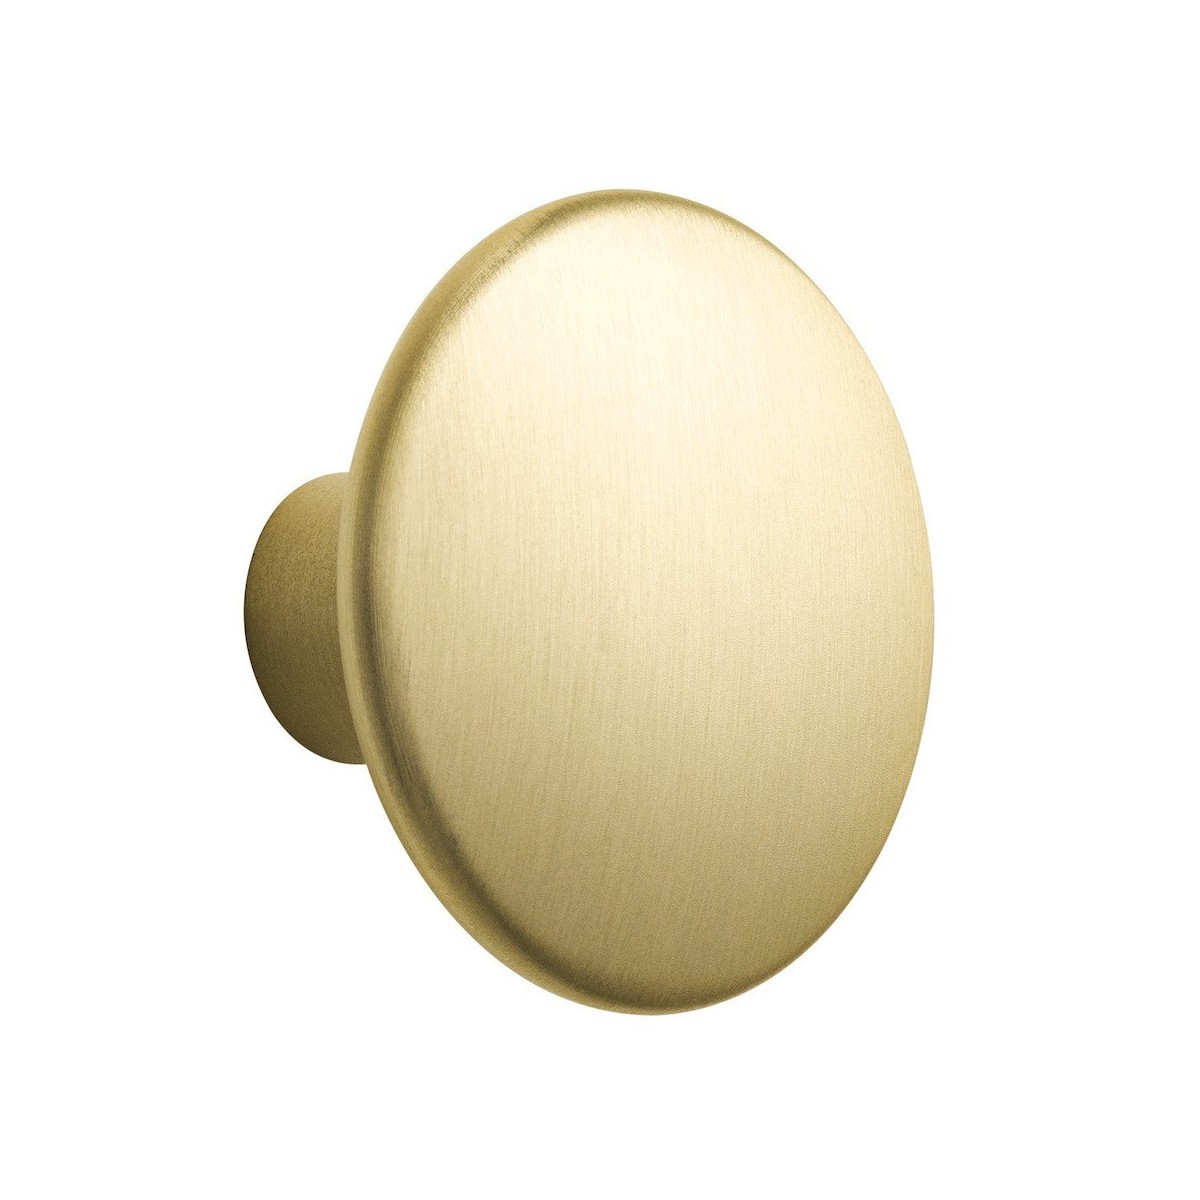 Ø2,7 cm (S) - brass - The Dots metal